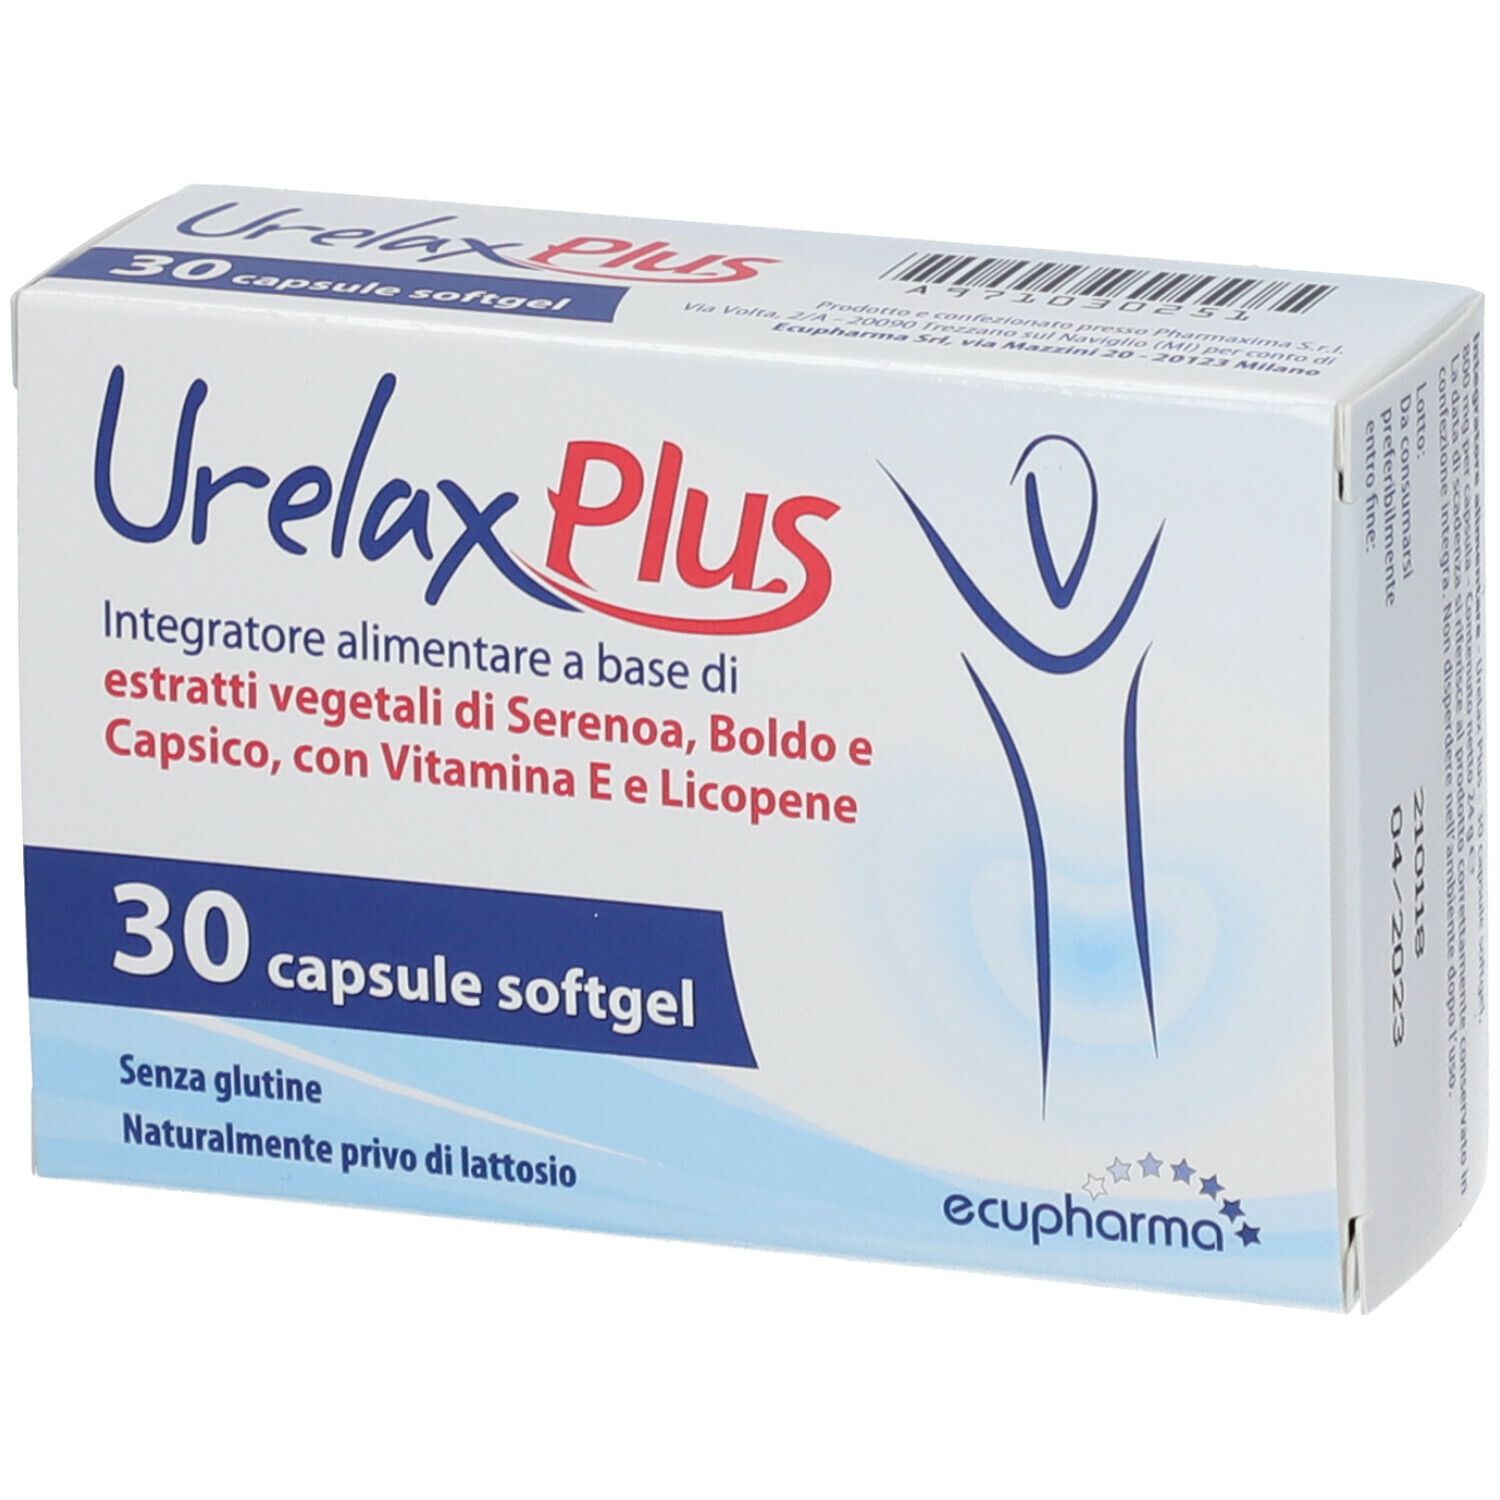 Urelax Plus